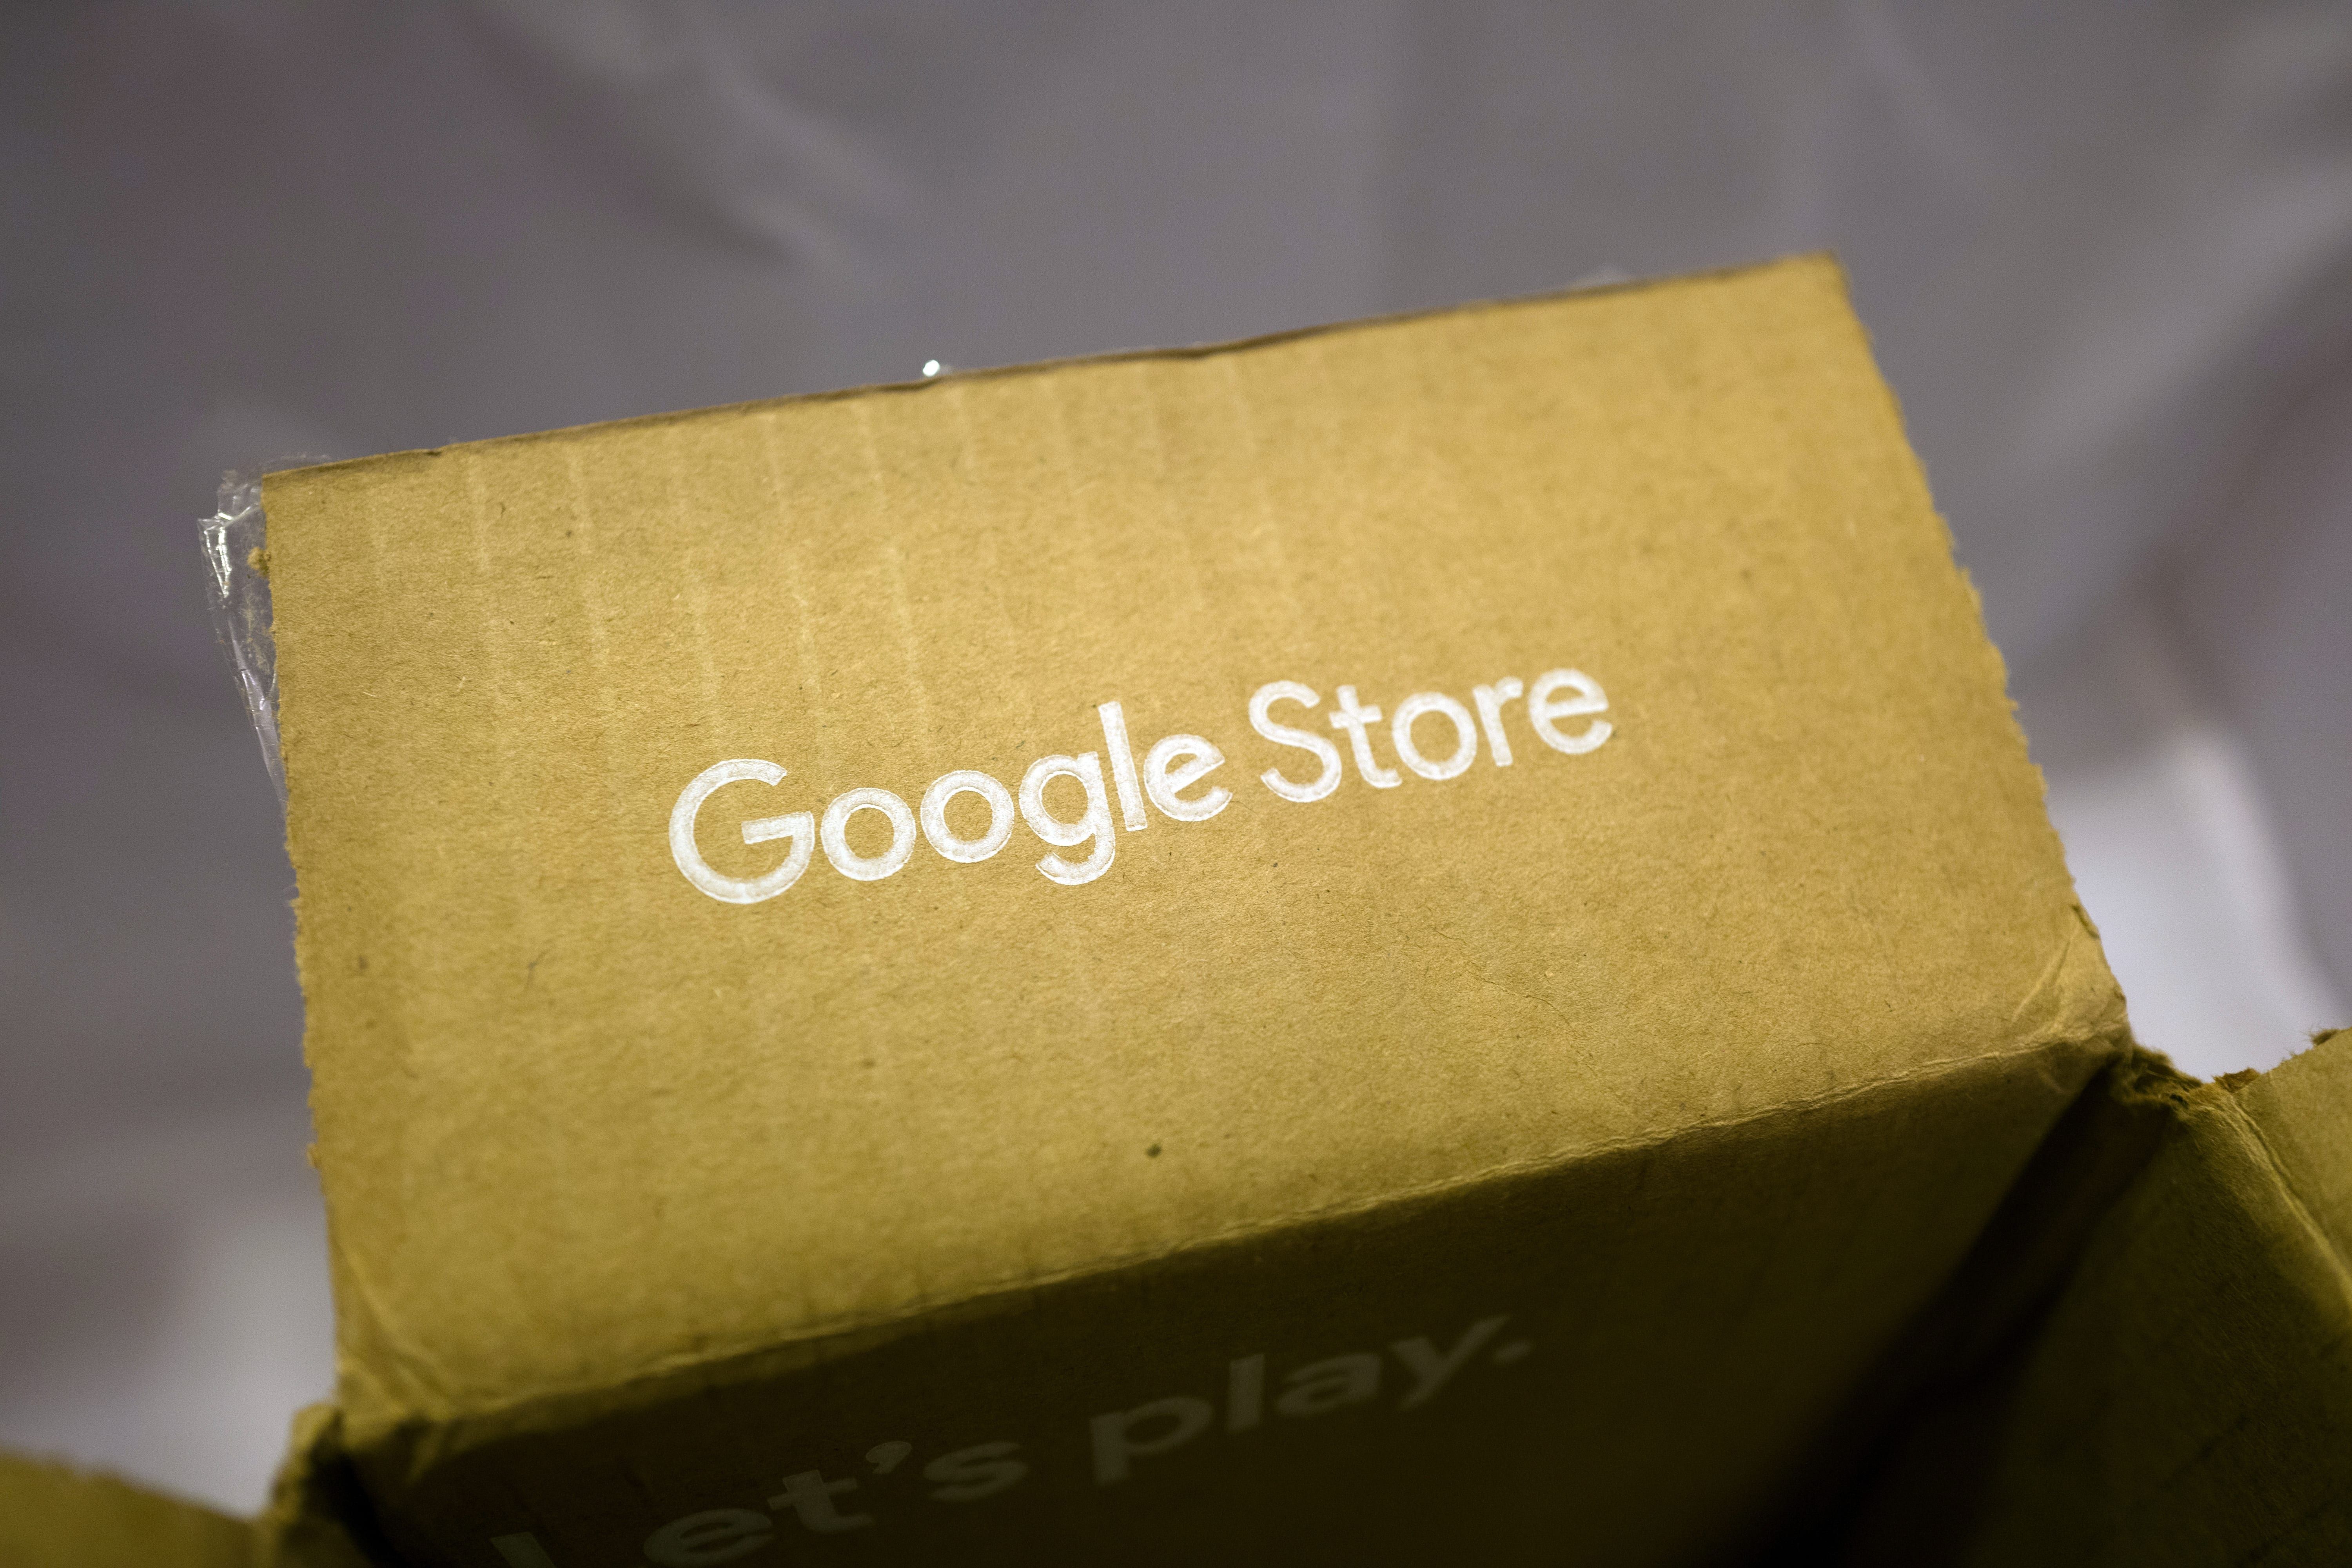 Google avaa ensimmäisen vähittäiskaupan tänä kesänä